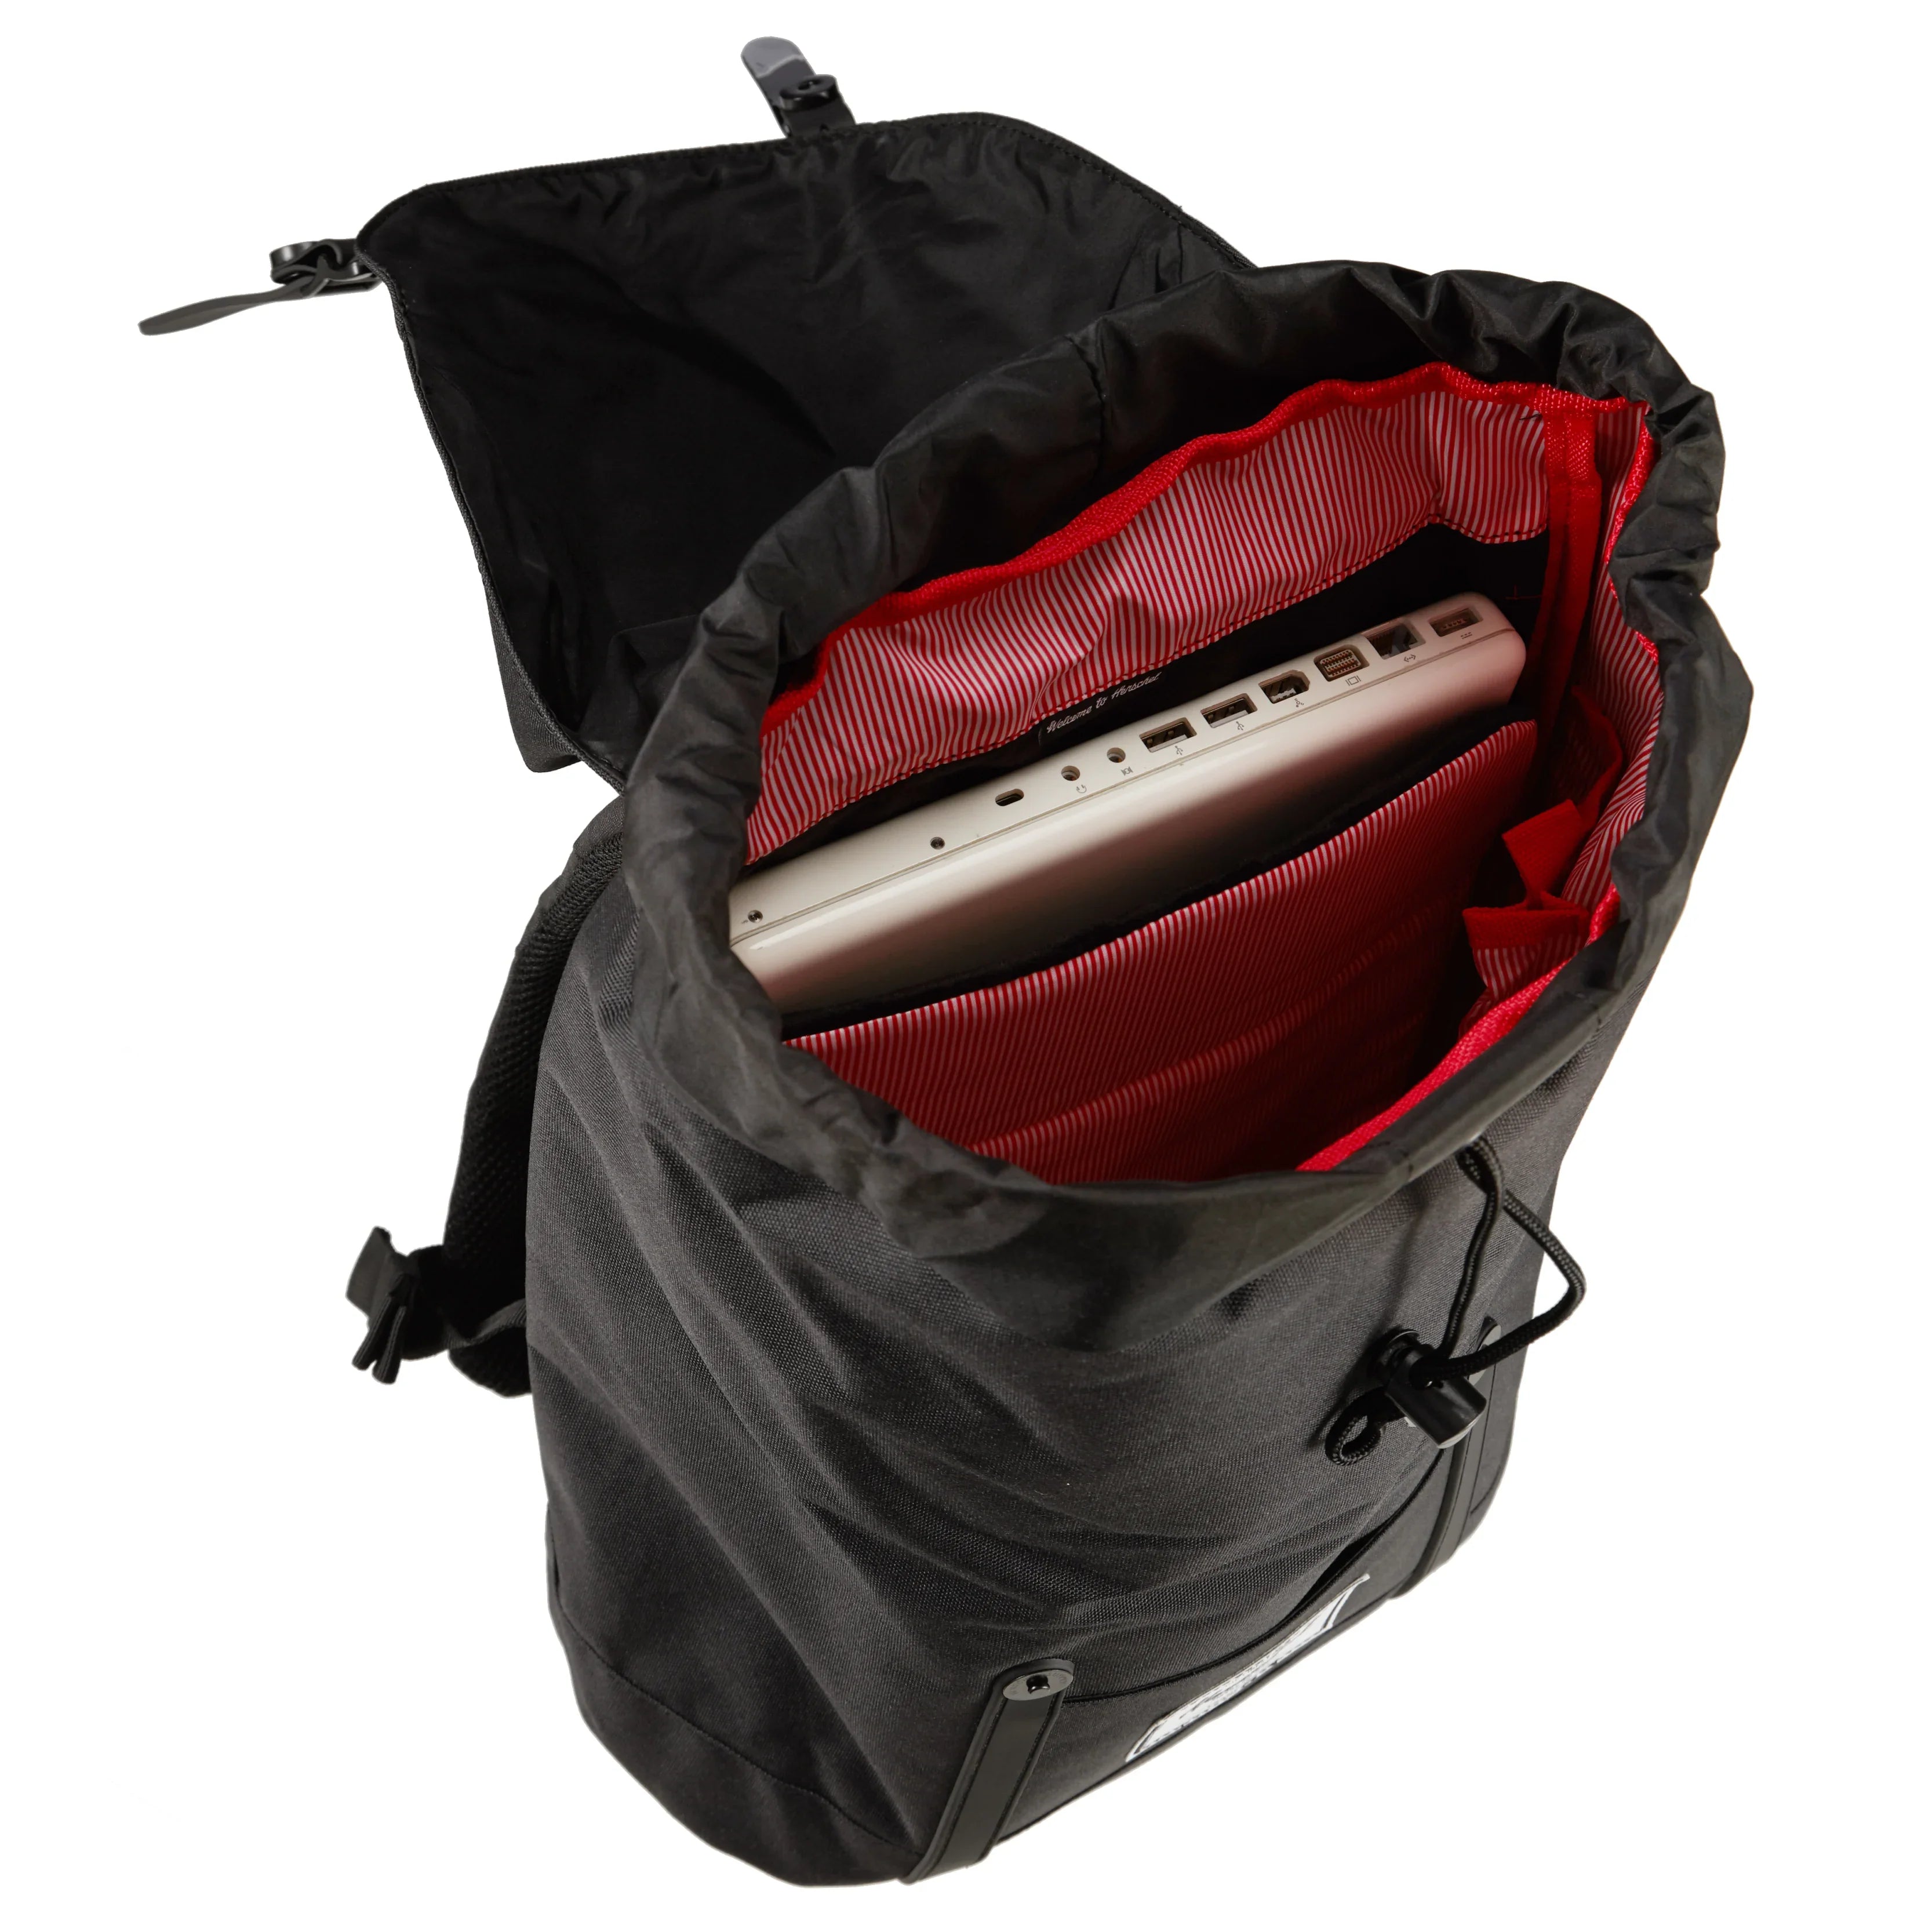 Herschel Bags Collection Retreat Backpack 45 cm - frog camo